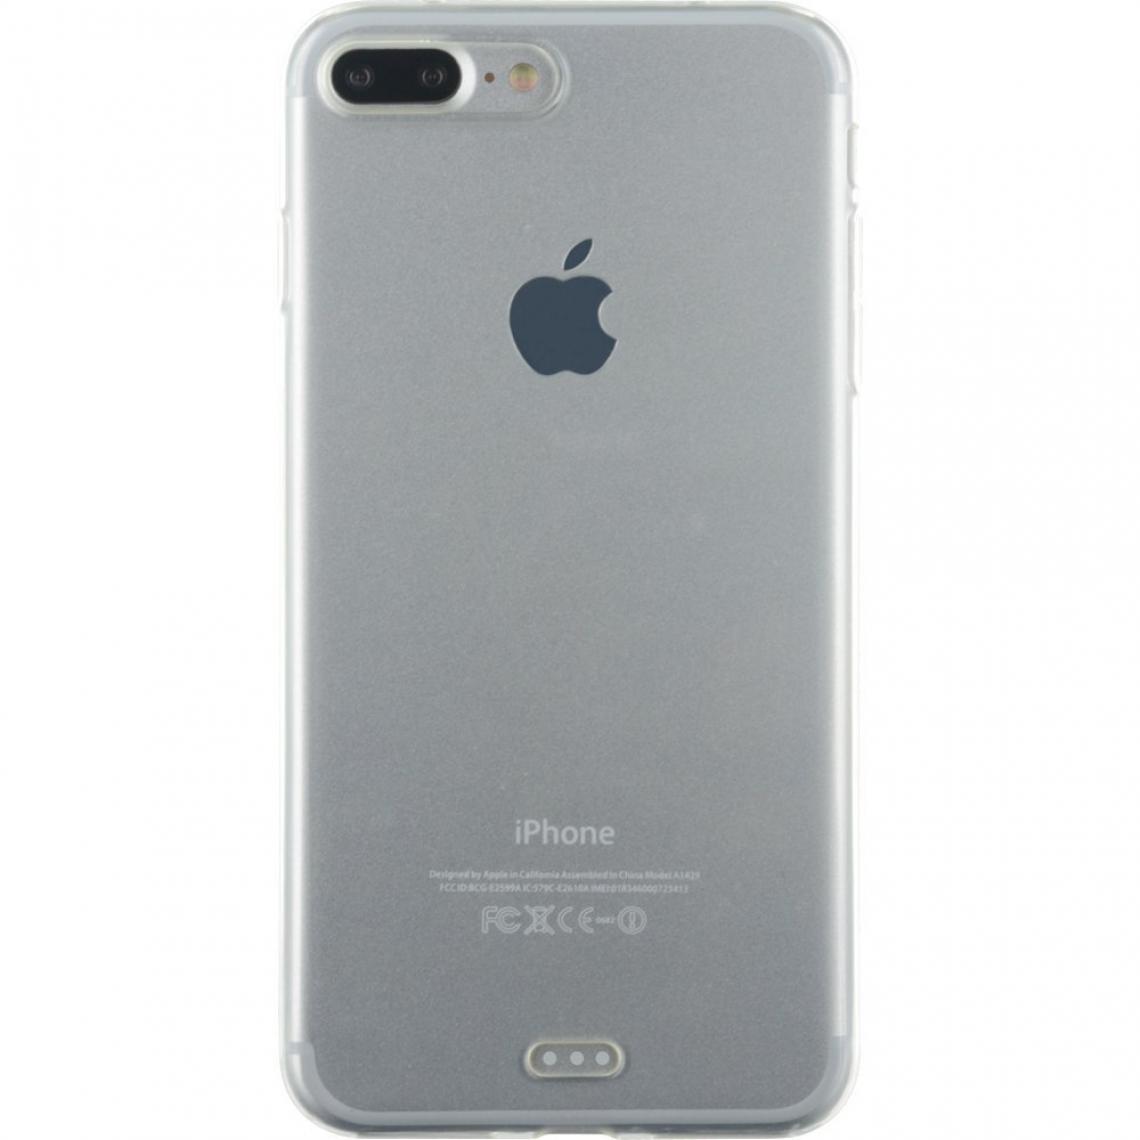 Evetane - Coque iPhone 7 Plus / 8 Plus souple silicone transparente - Coque, étui smartphone